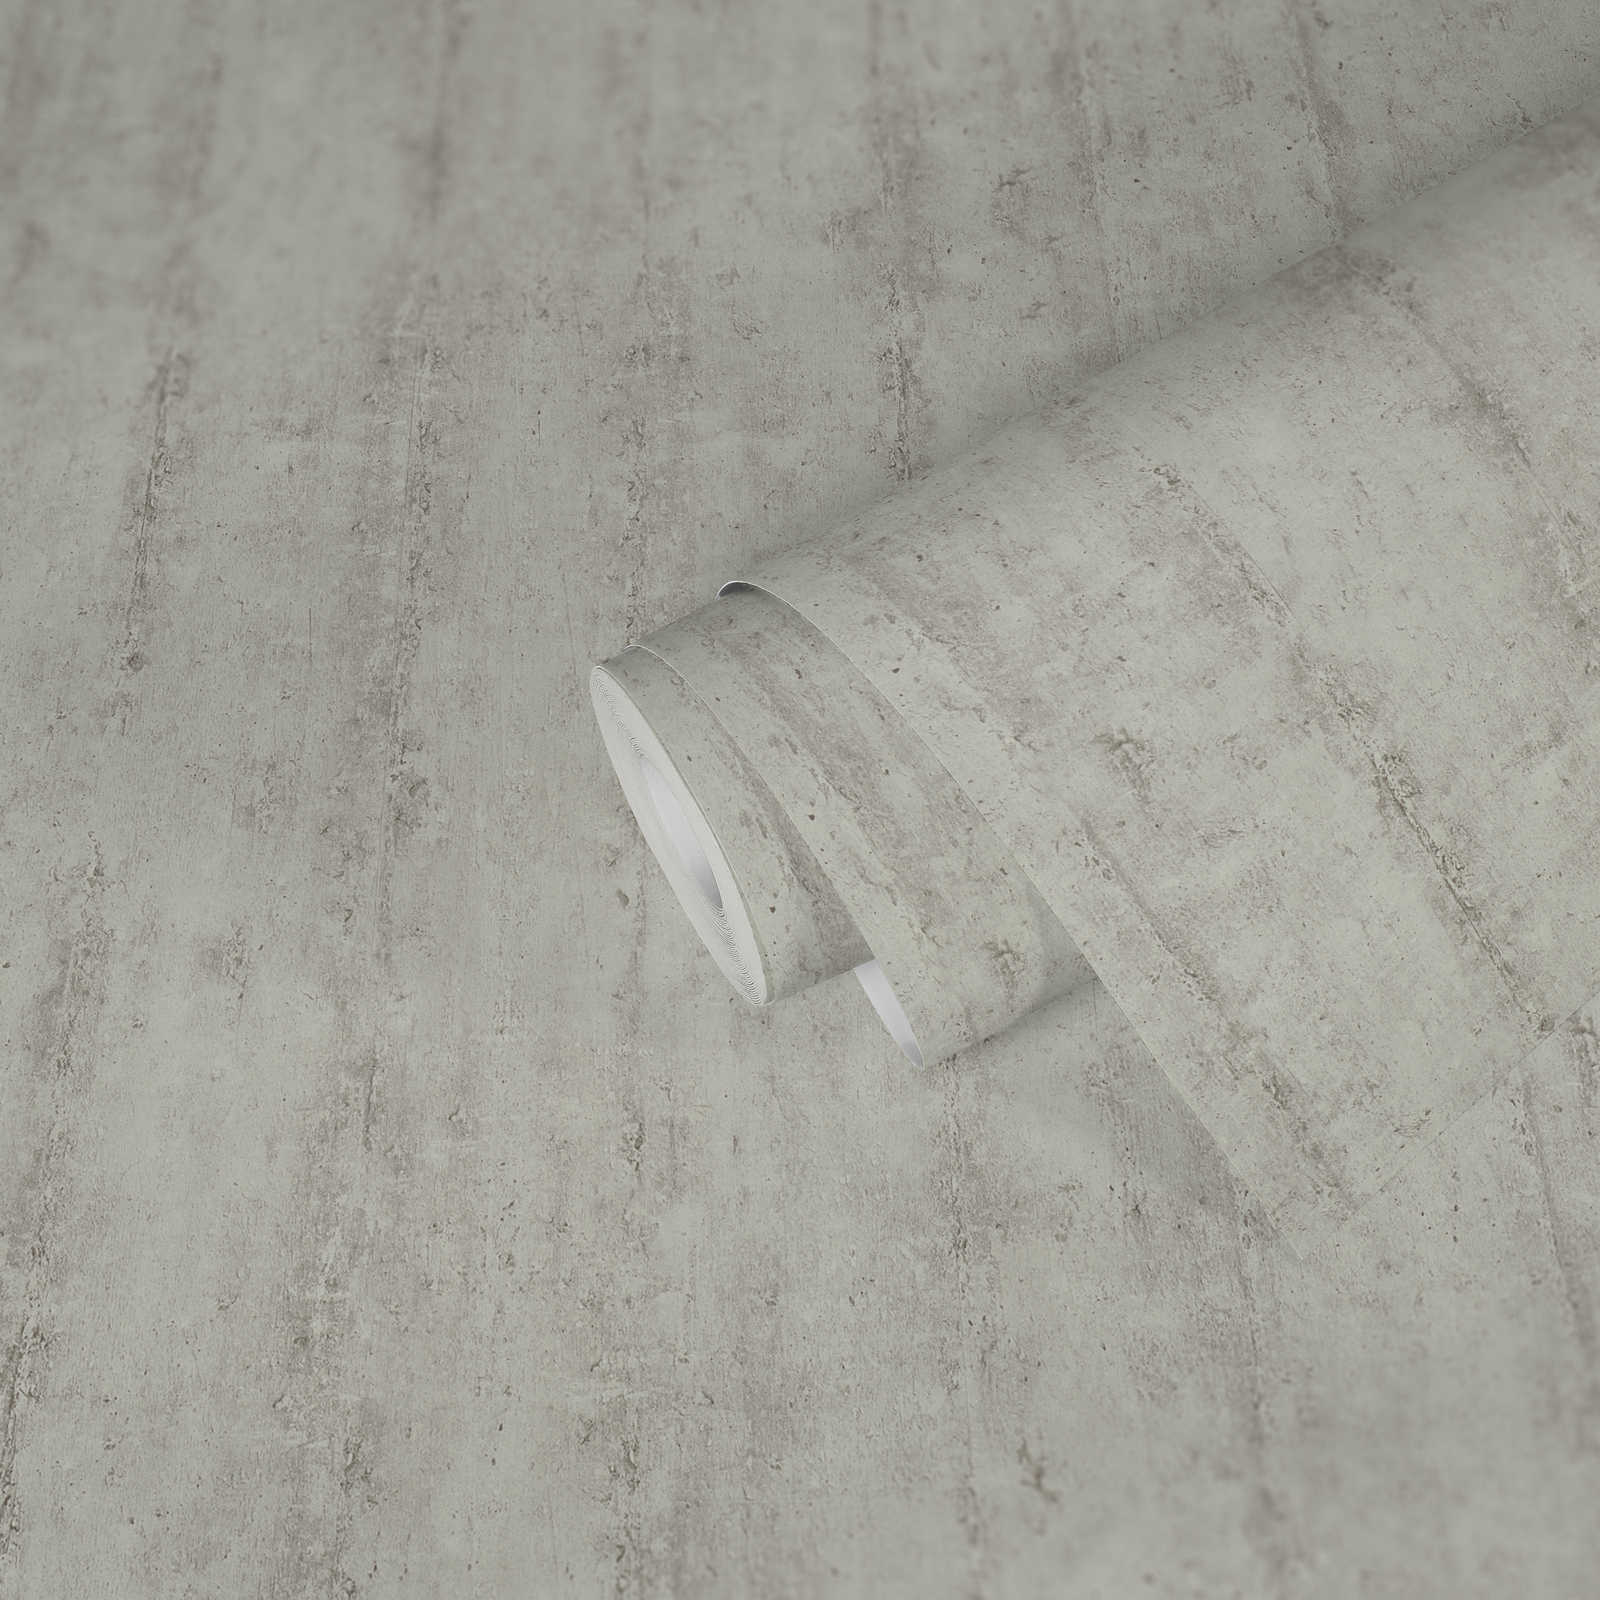             Carta da parati non tessuta con motivo a righe effetto cemento - beige, grigio
        